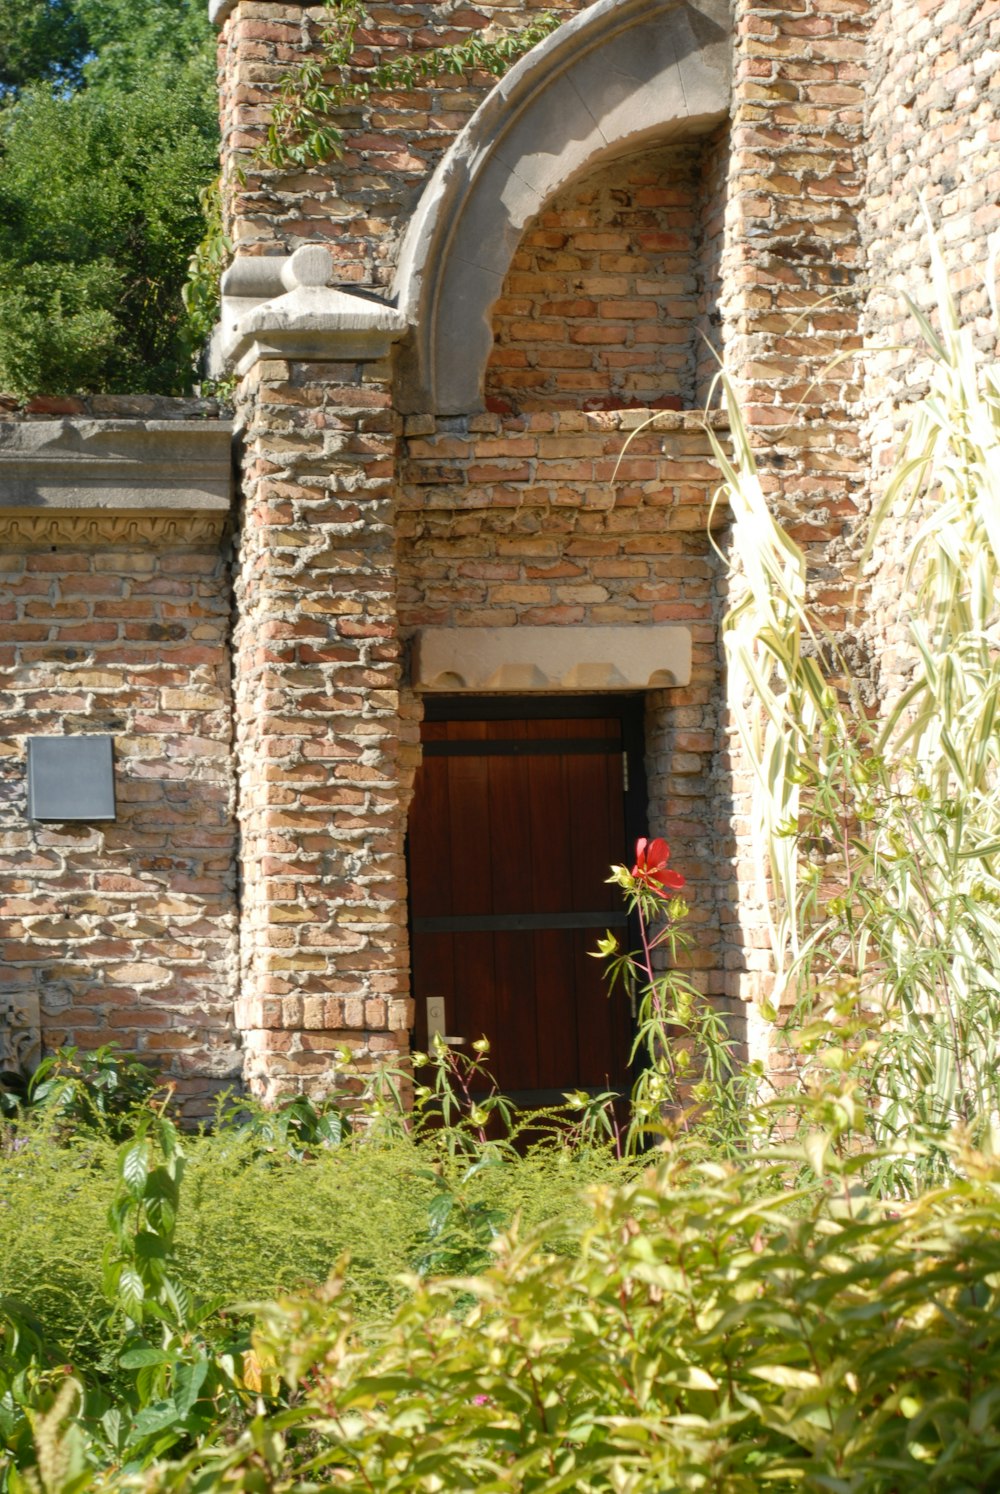 a door in a brick building